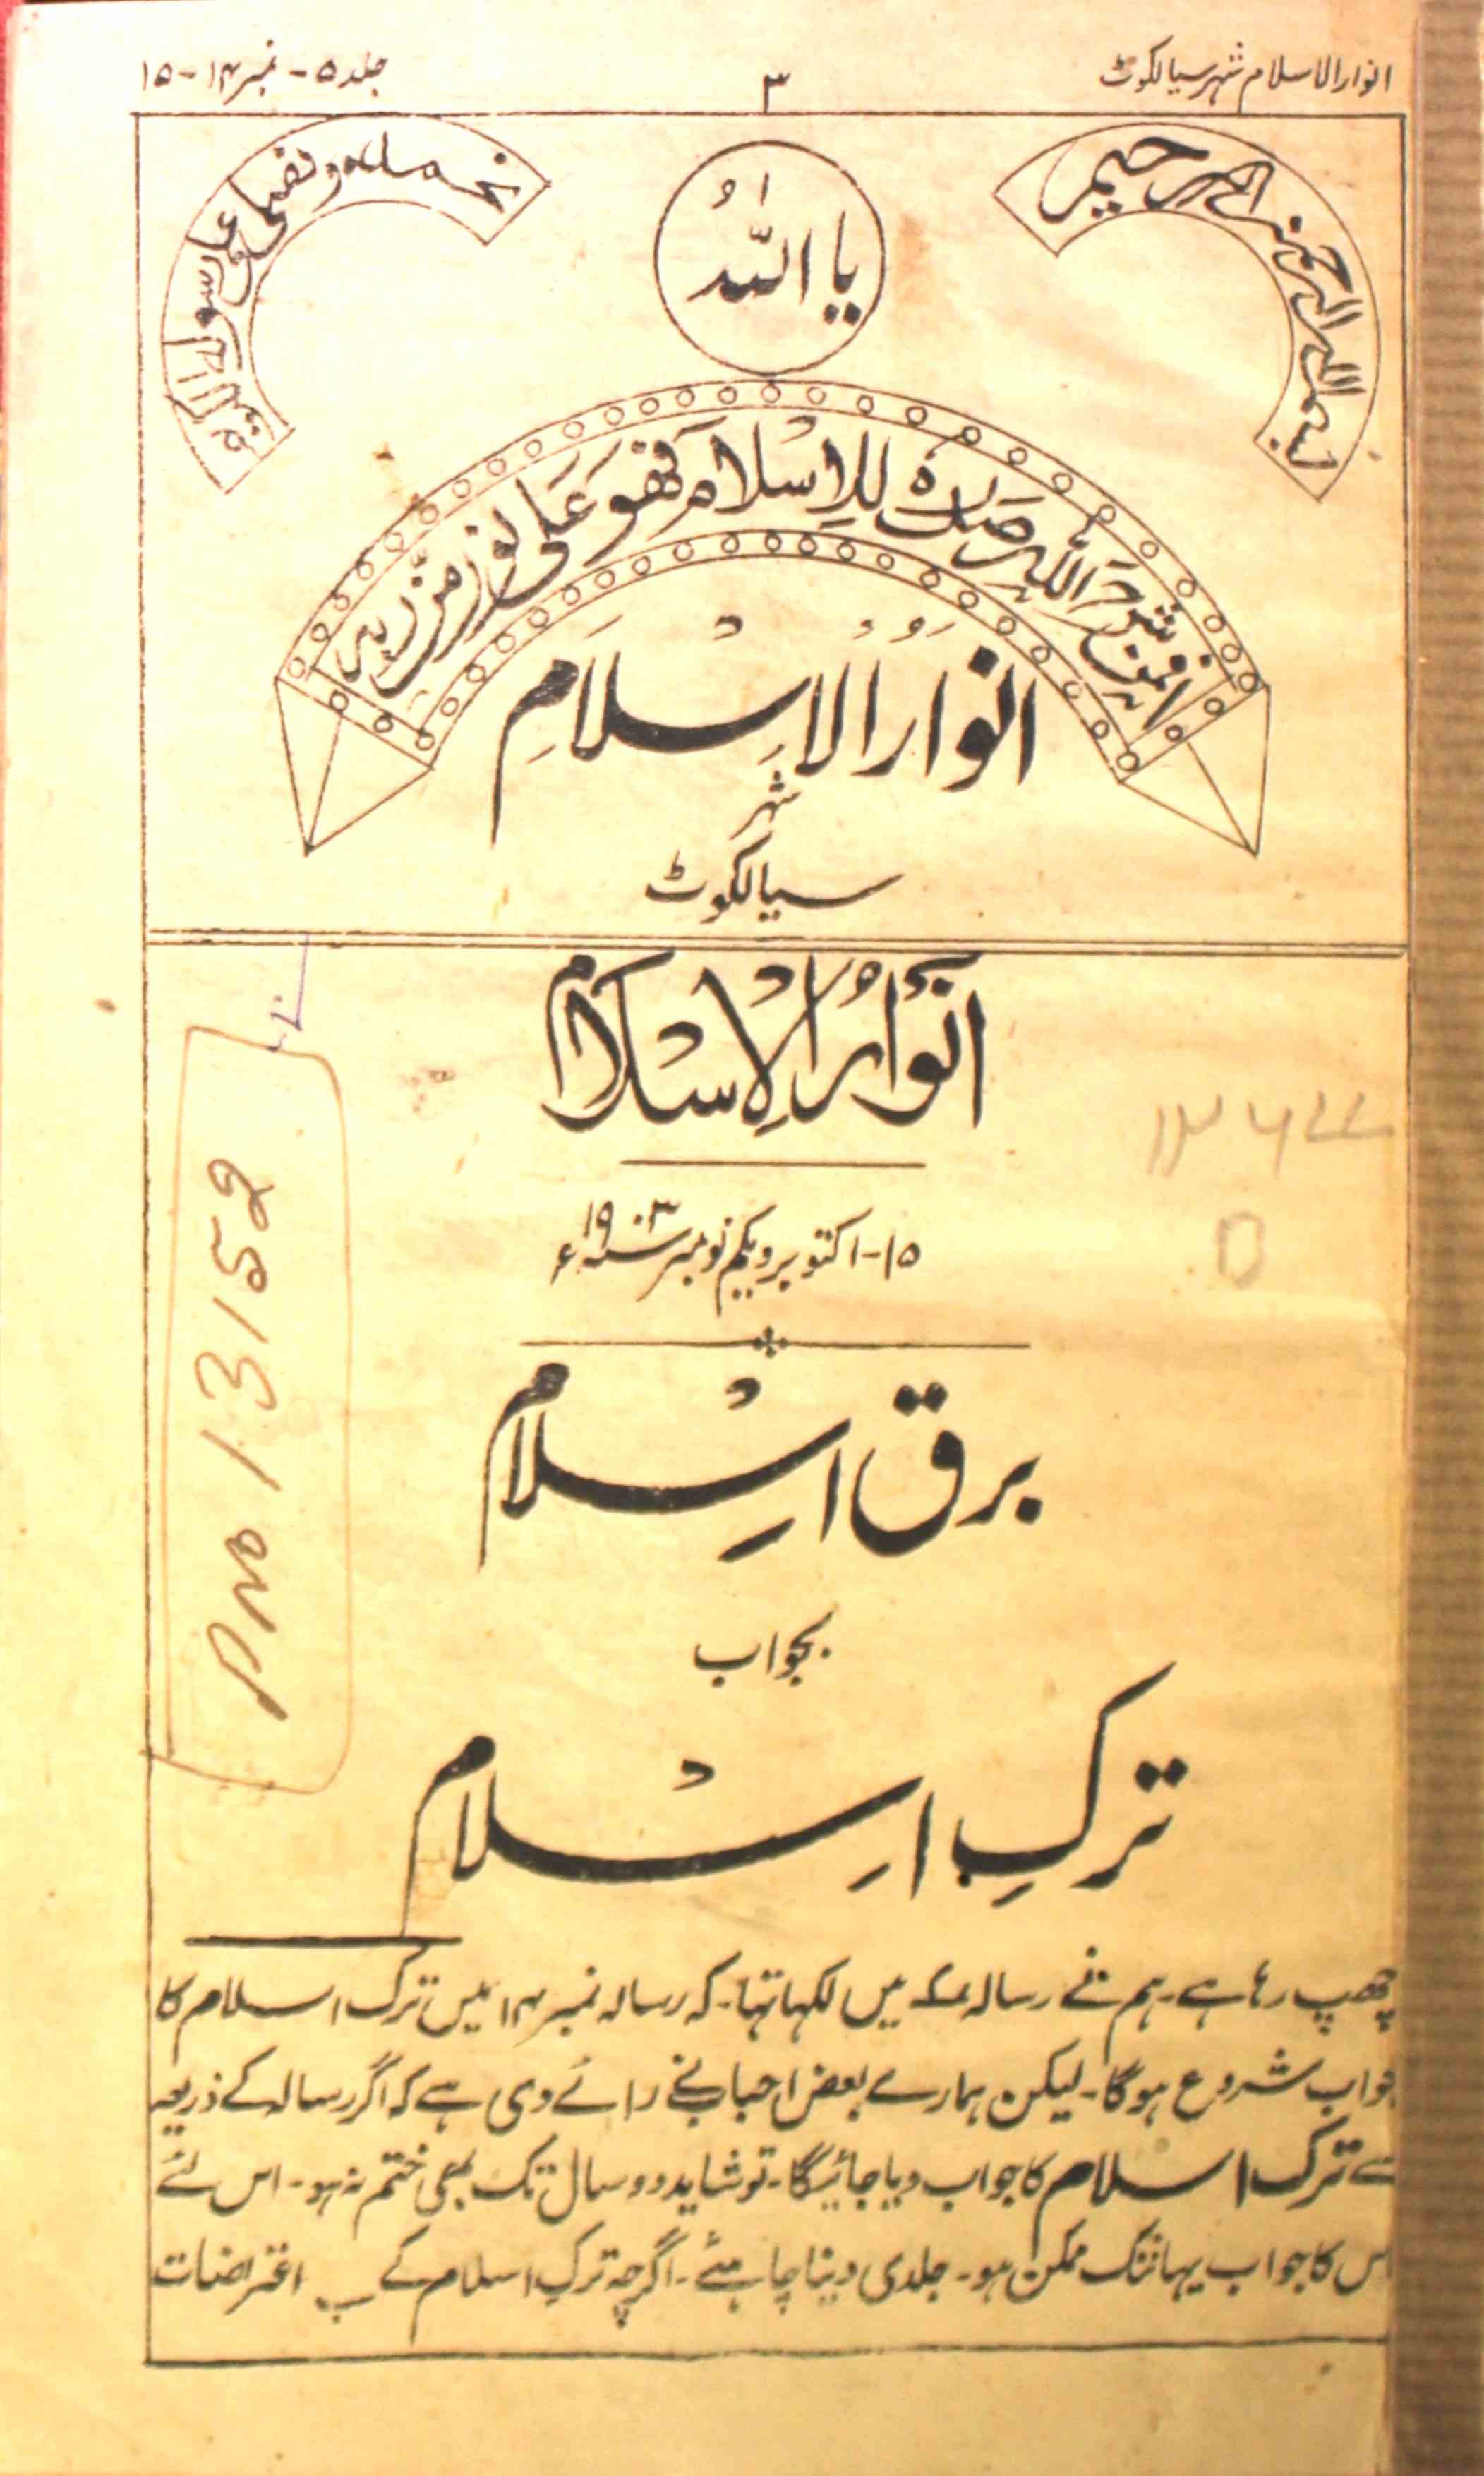 Anwar-e-Islam